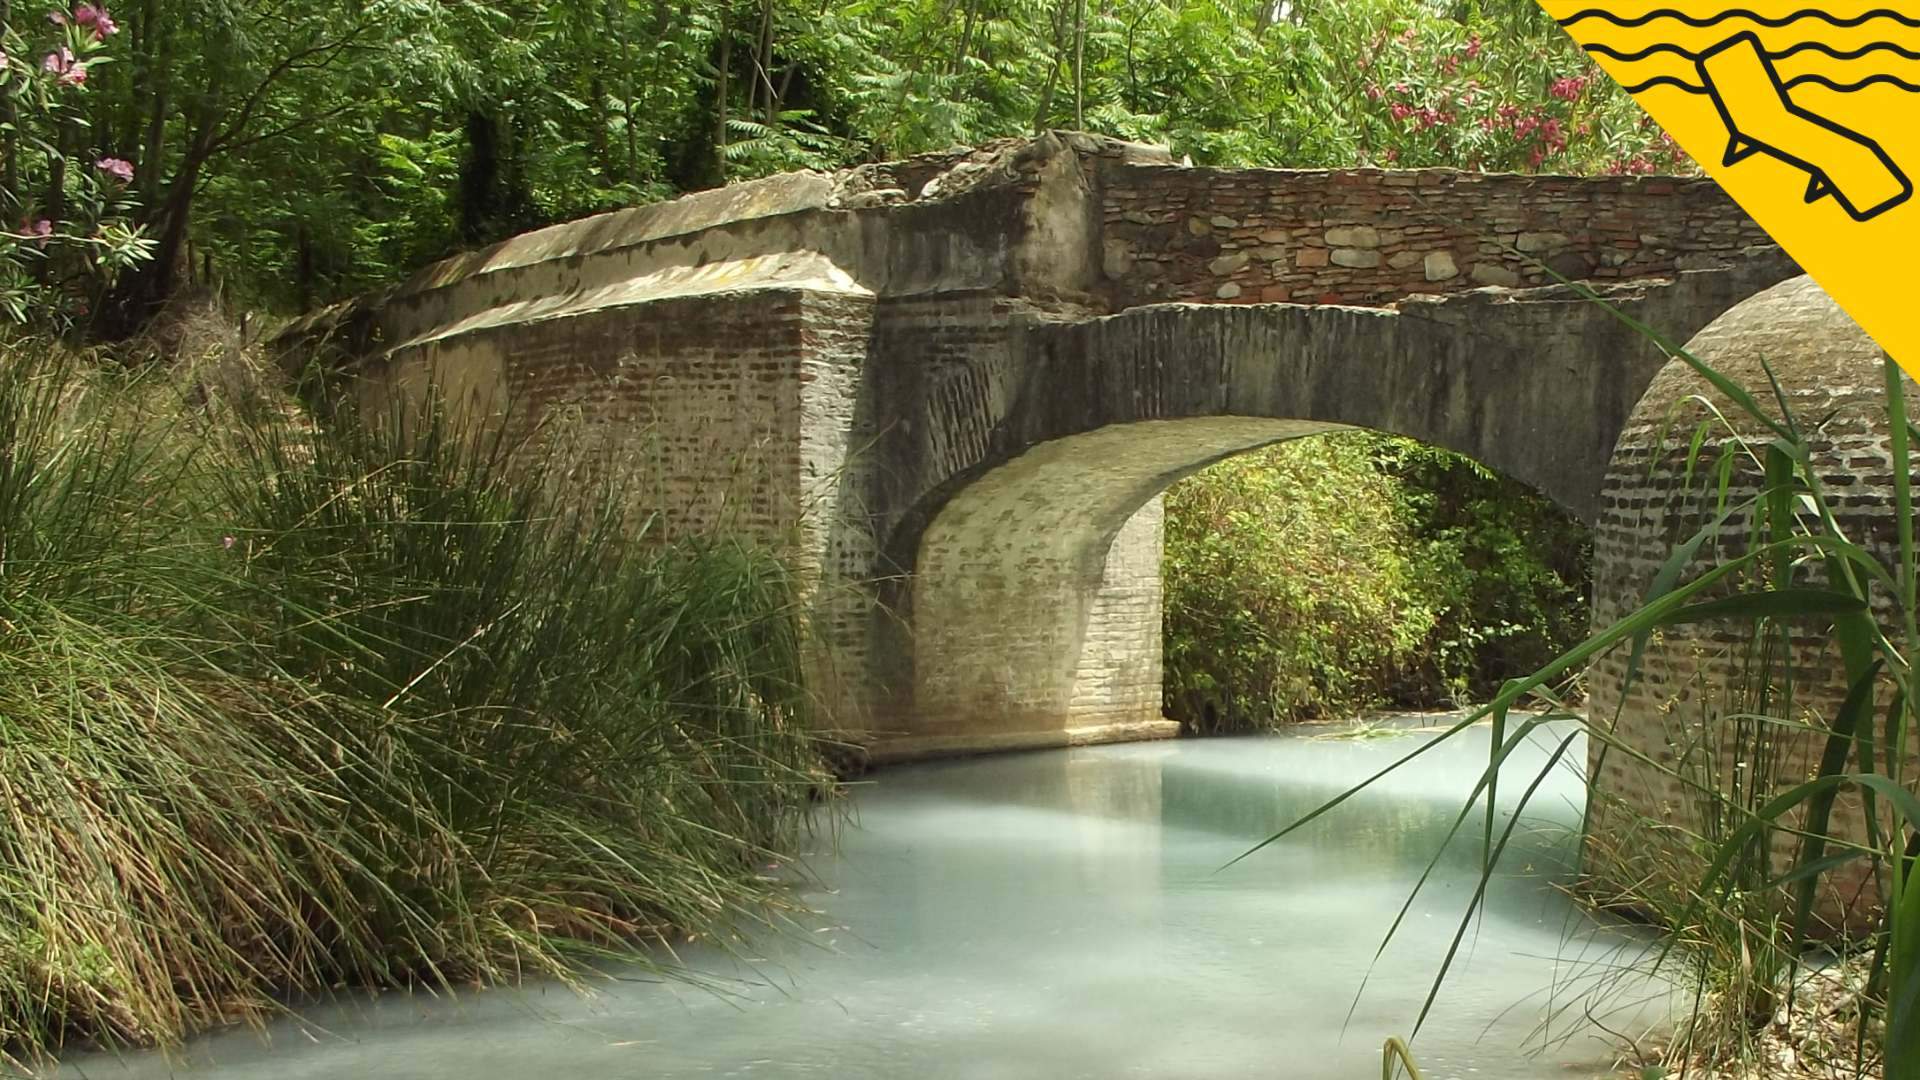 Les aigües termals amb propietats curatives on es va banyar Juli Cèsar